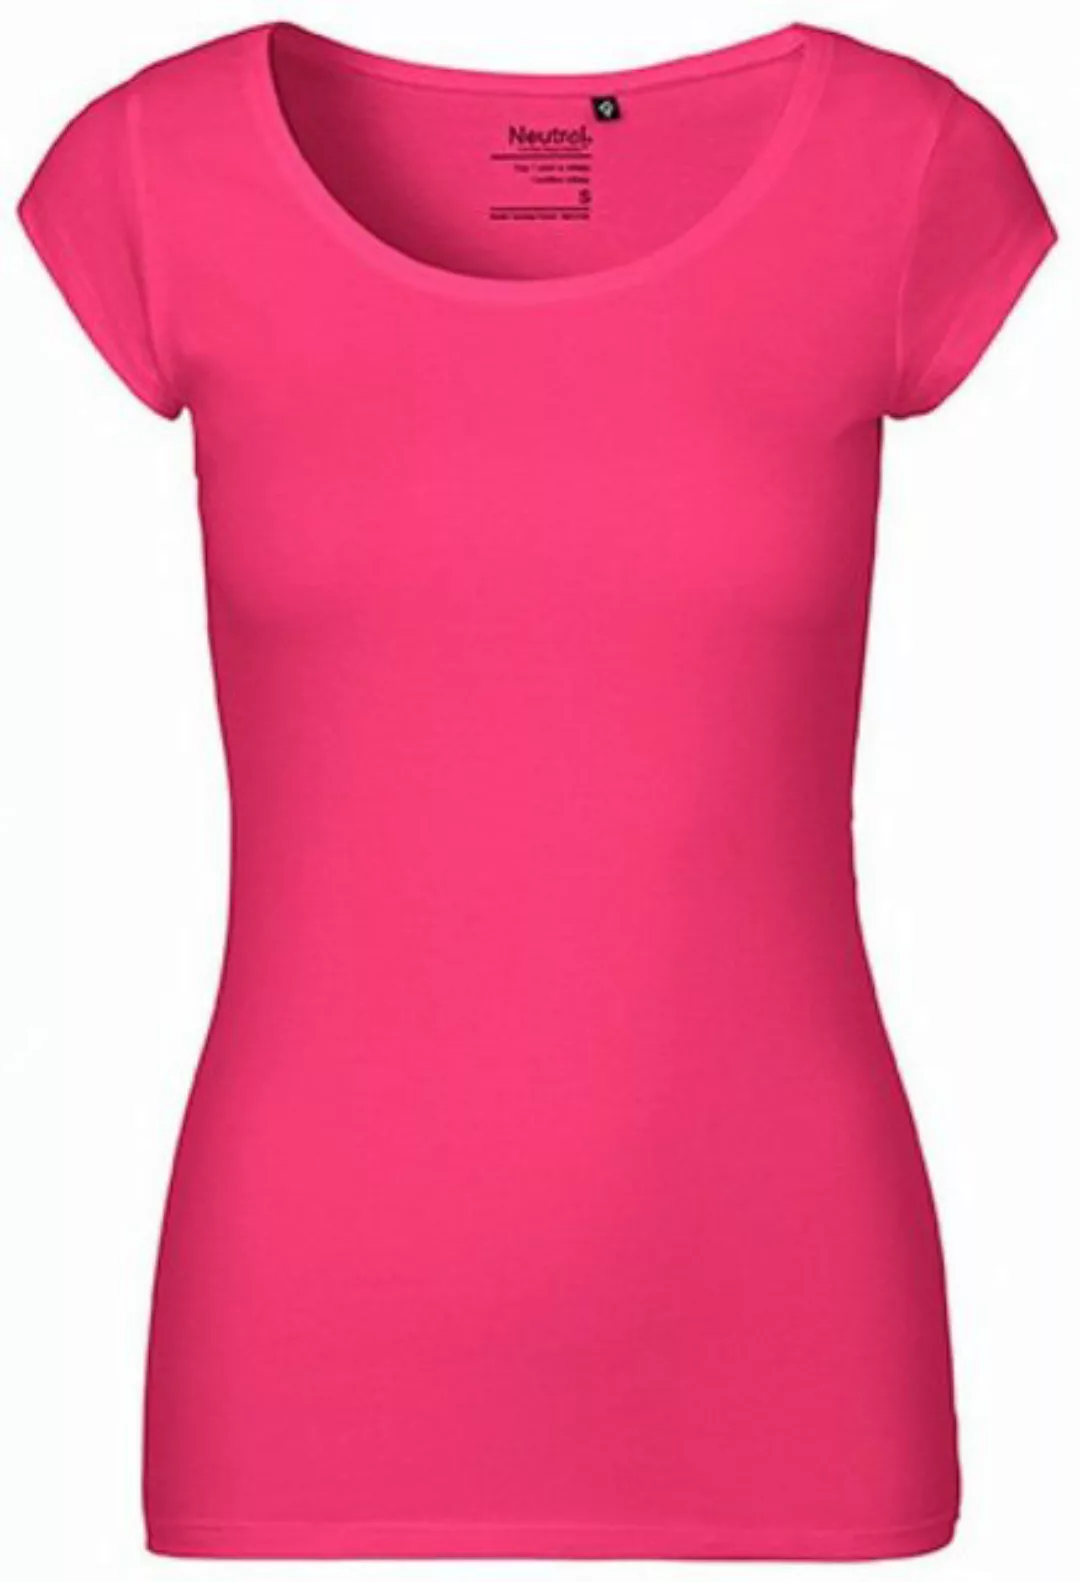 Neutral Rundhalsshirt Damen Roundneck T-Shirt / 100% Fairtrade-Baumwolle günstig online kaufen